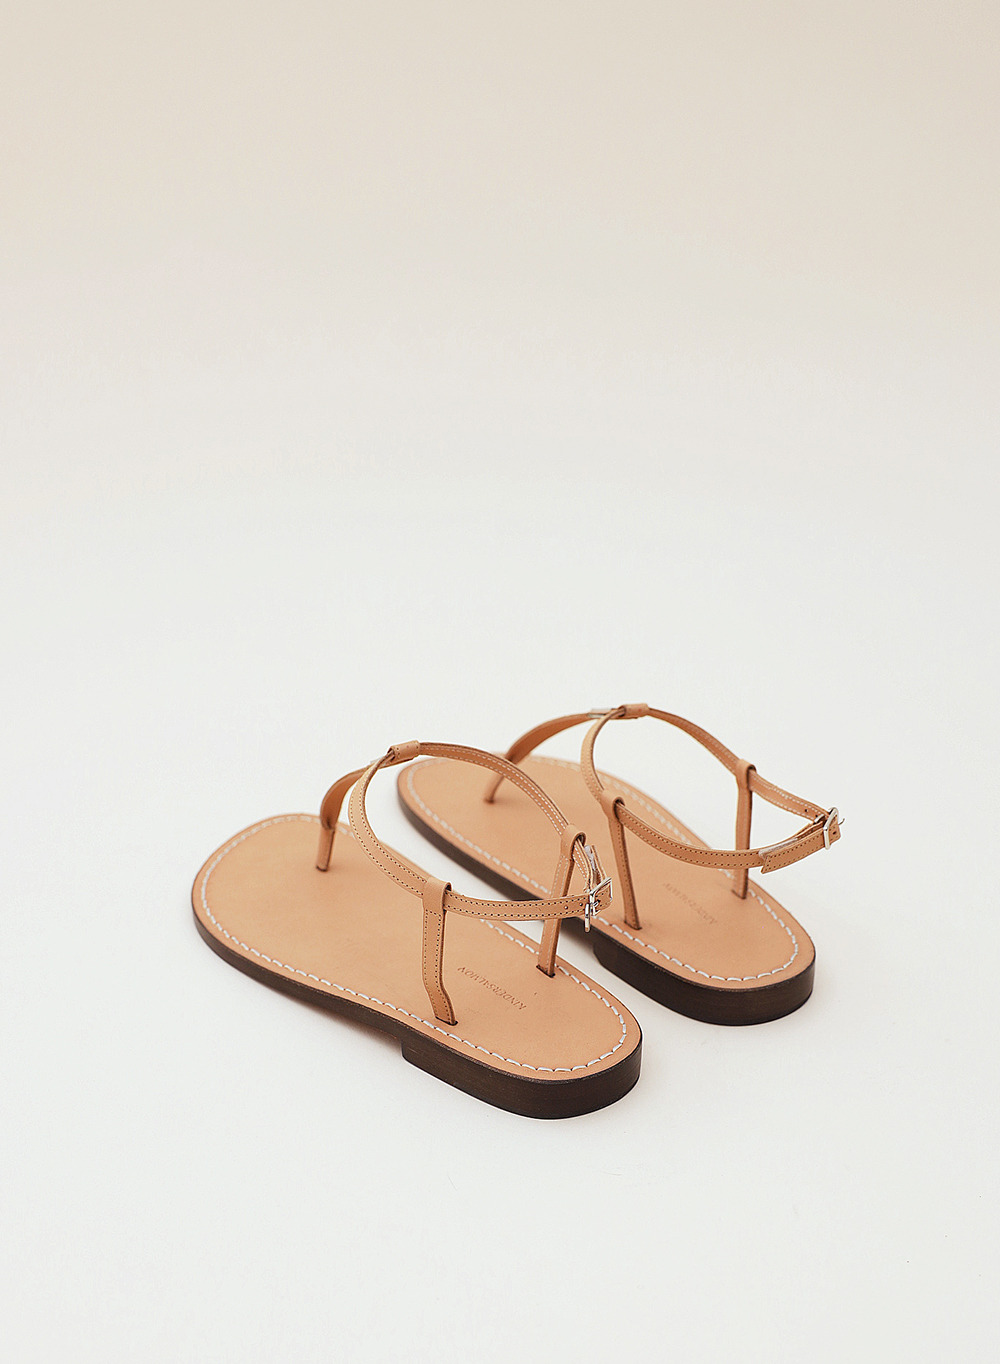 Strap Flat Sandals Tan